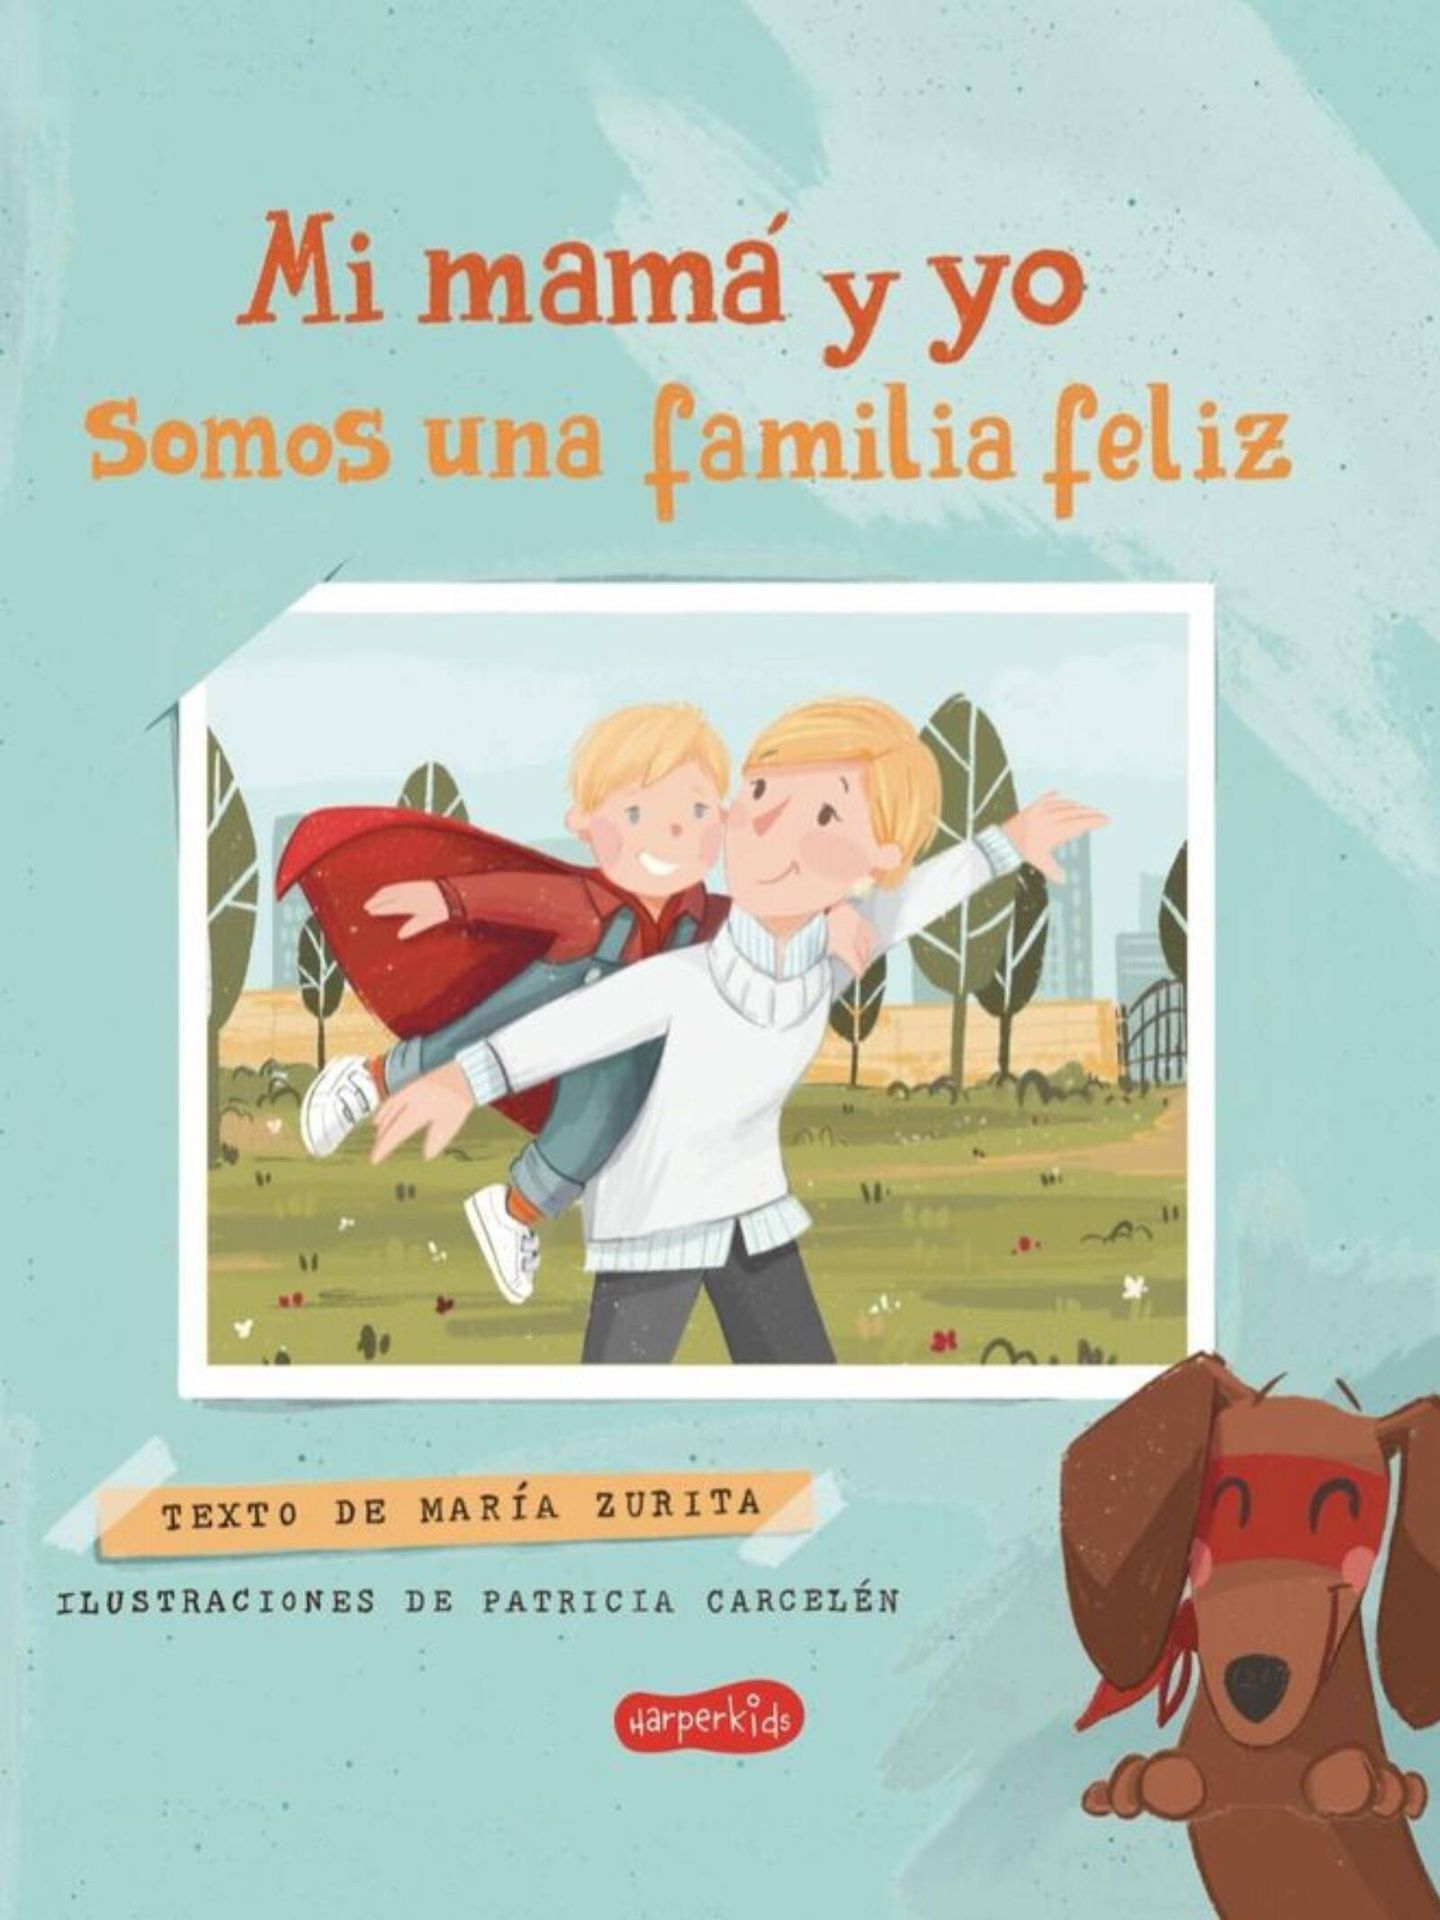 La portada del primer libro de María Zurita sobre su familia monoparental. (Instagram/mariazuritadeborbon)